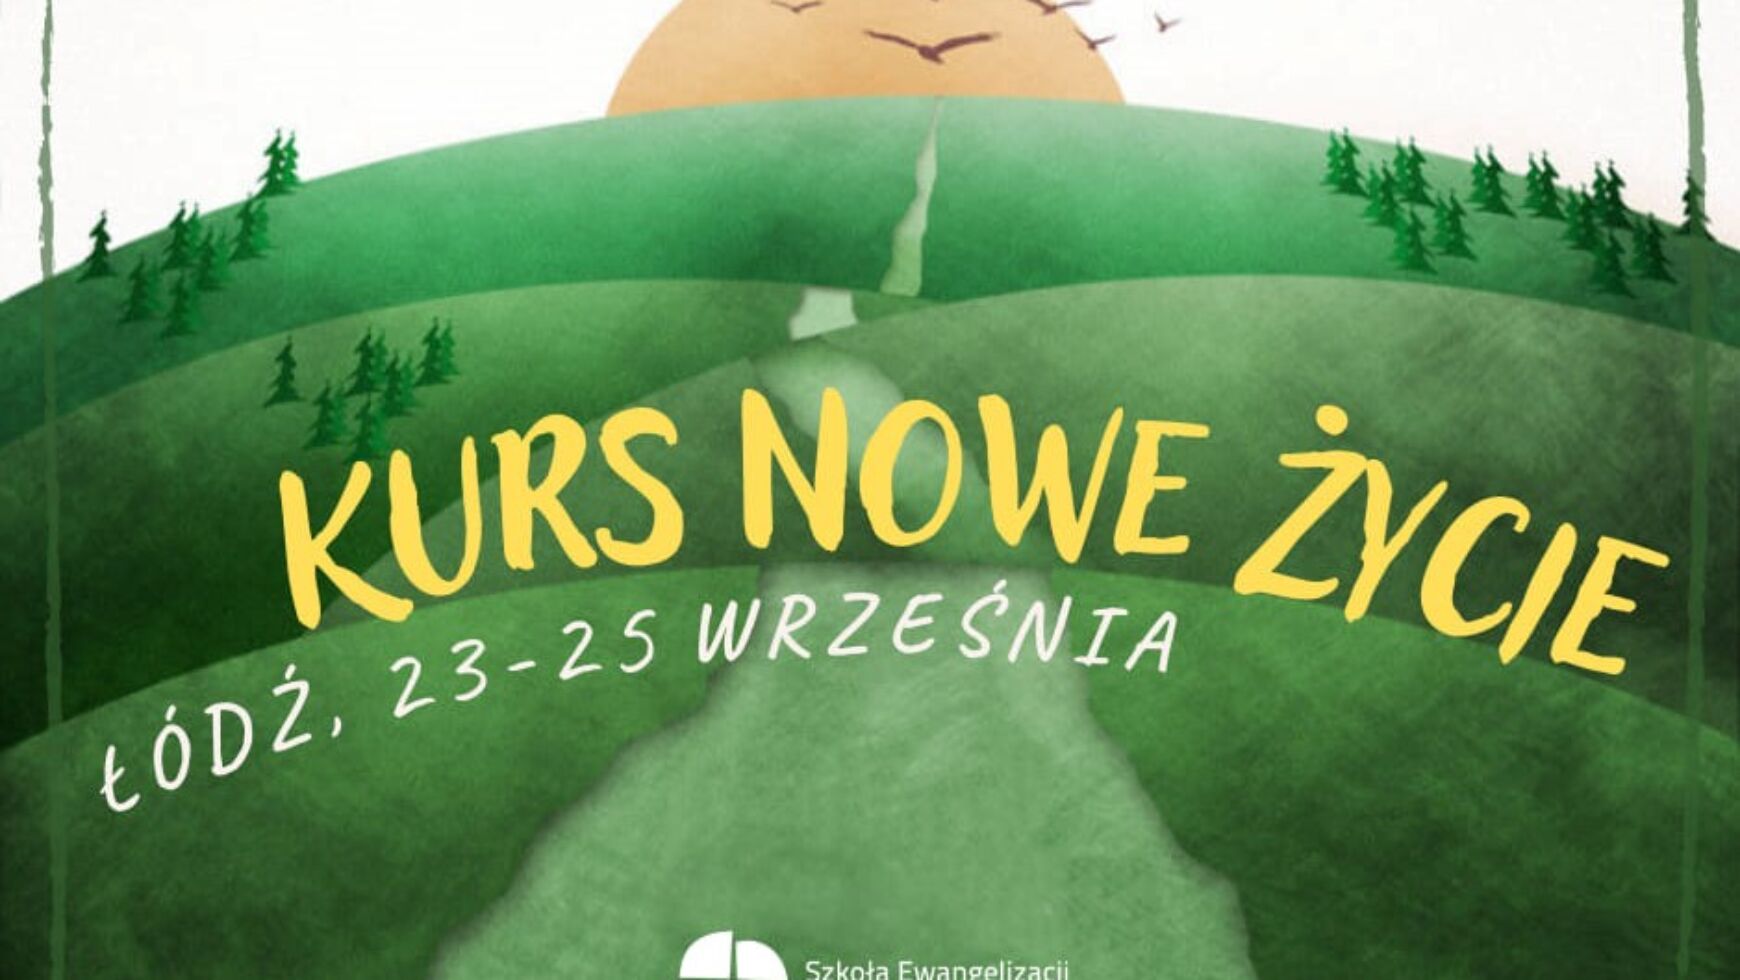 Kurs Nowe Życie, Łódź